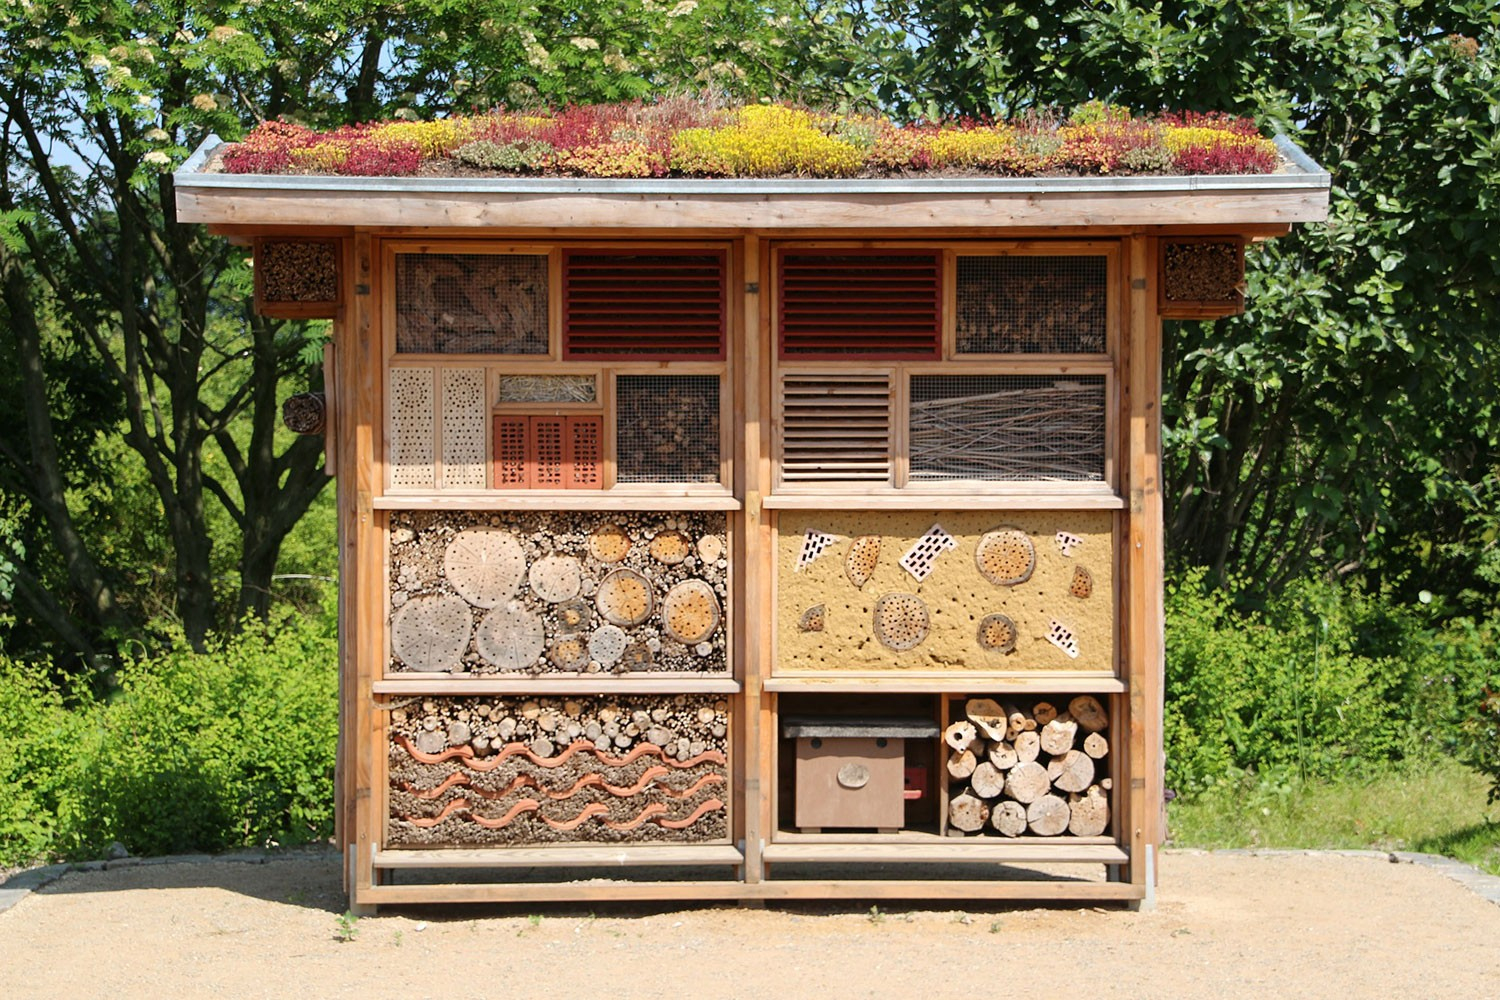 Installer Un Hôtel À Insectes Dans Son Jardin - Blog Jardin encequiconcerne Abris Pour Insectes Du Jardin